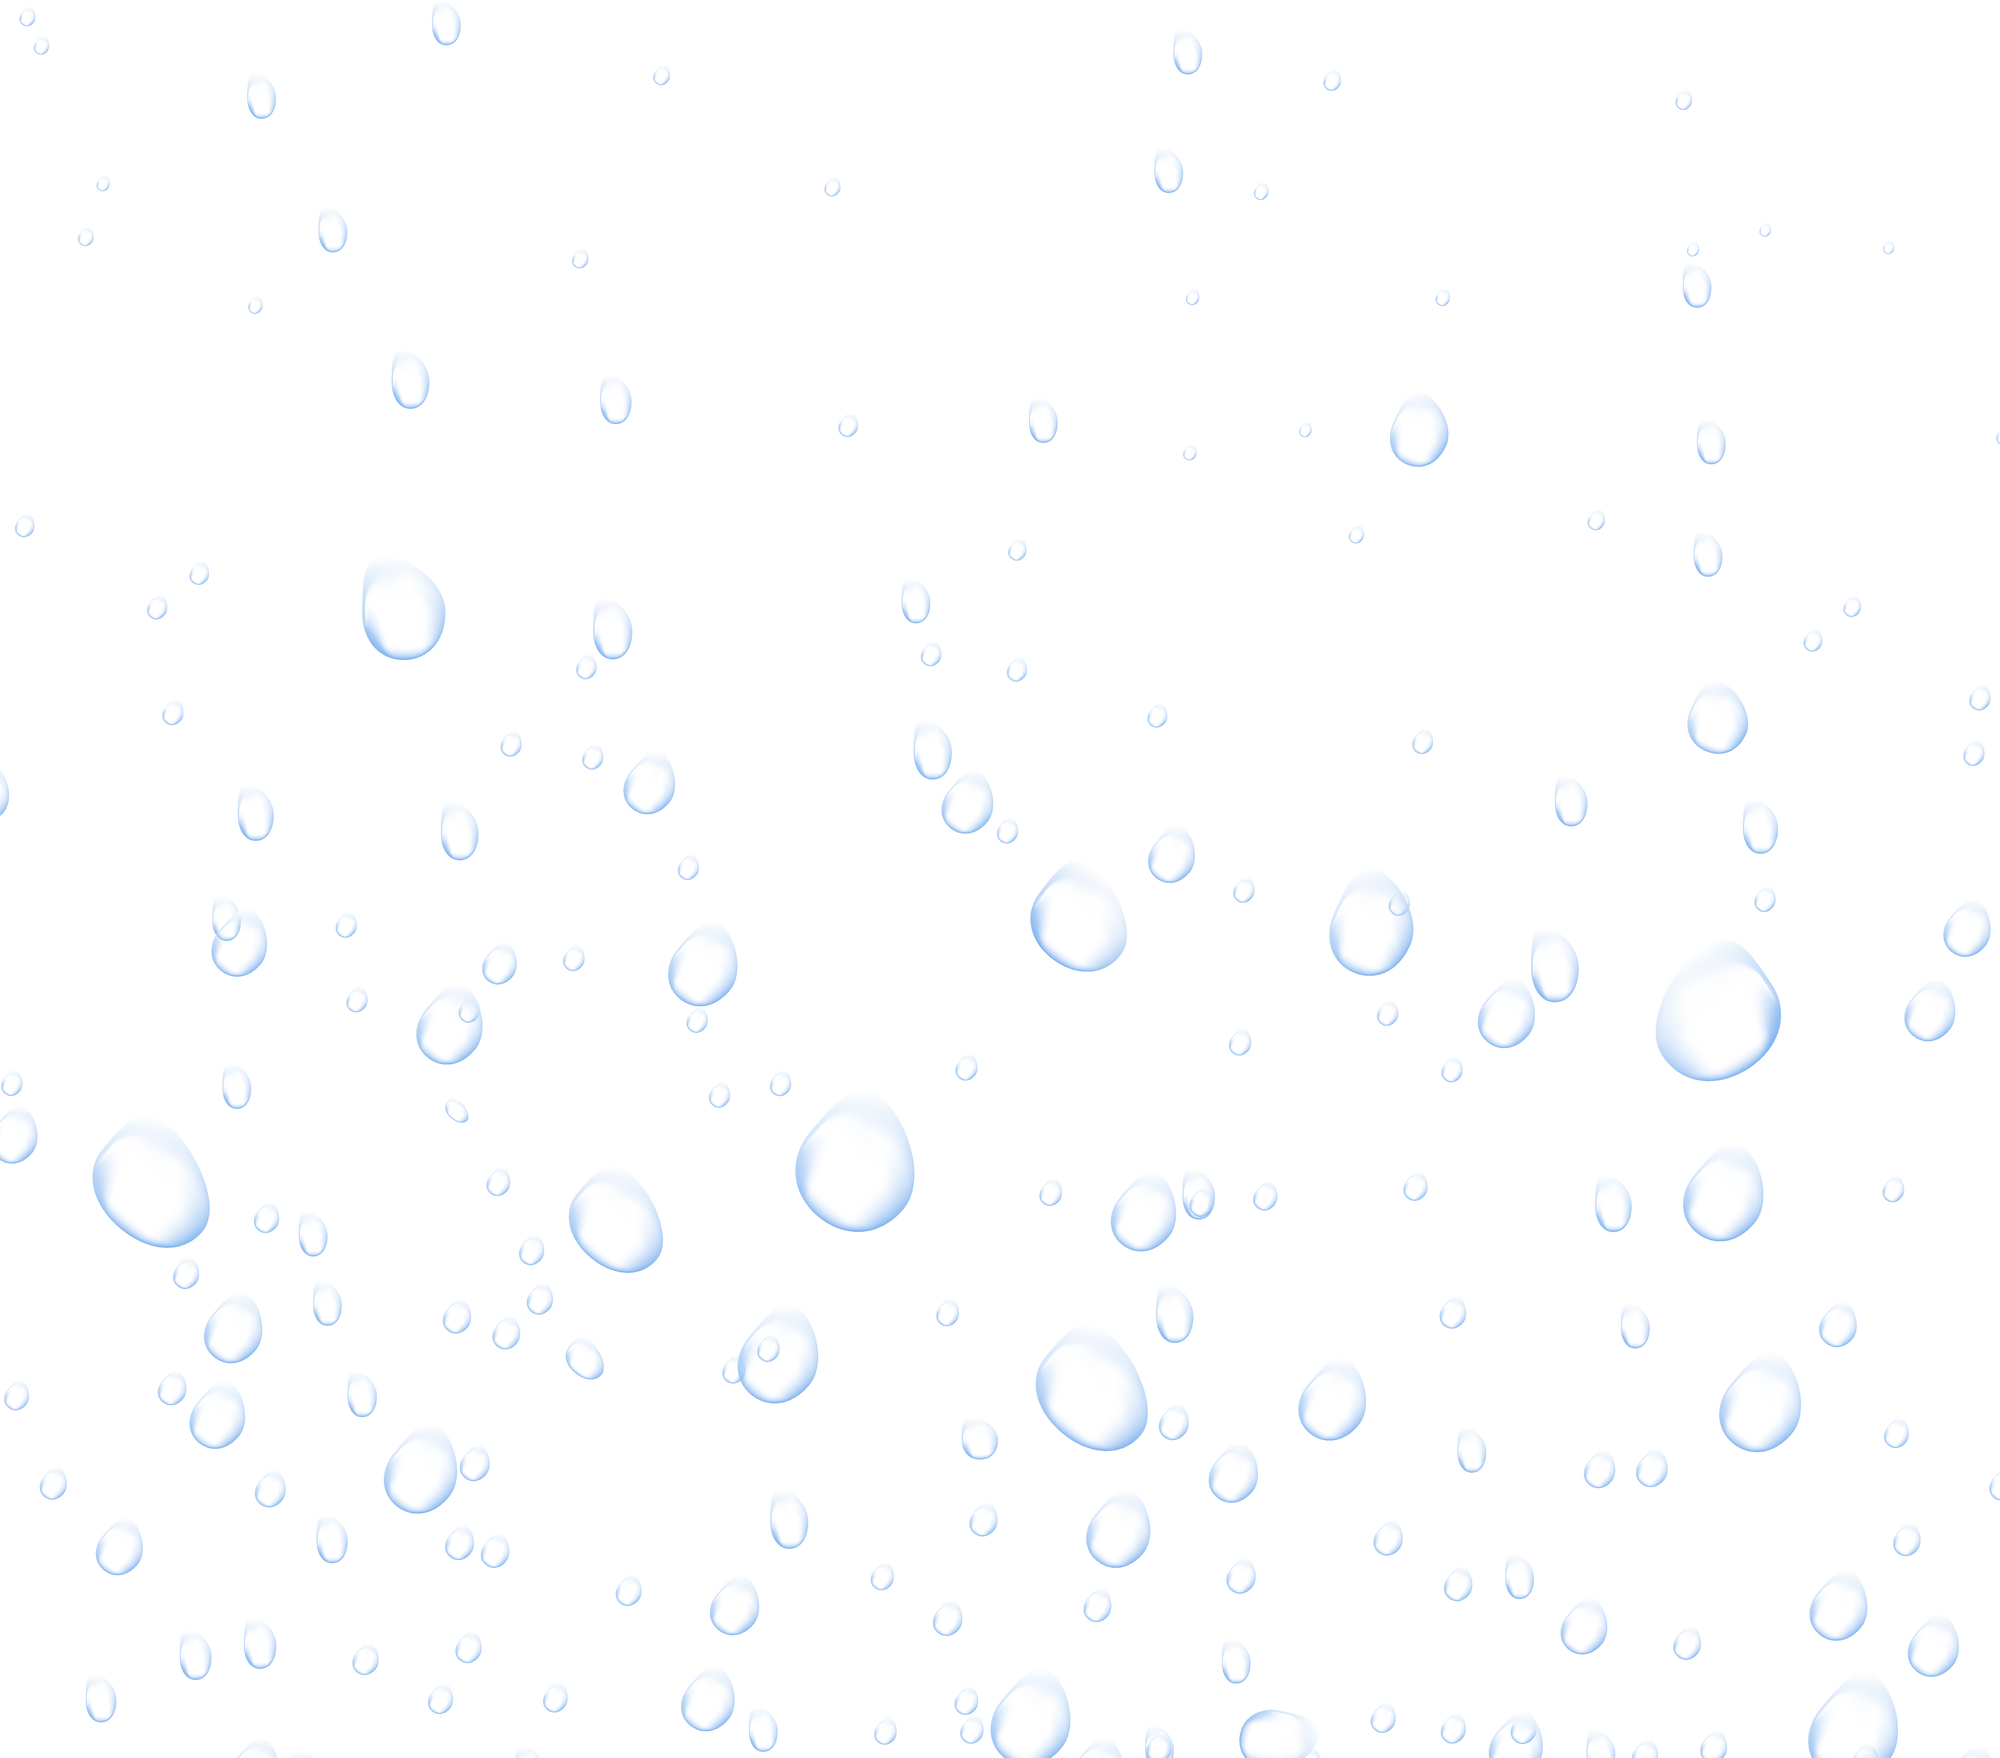 Water drops. Water fizzing bubbles